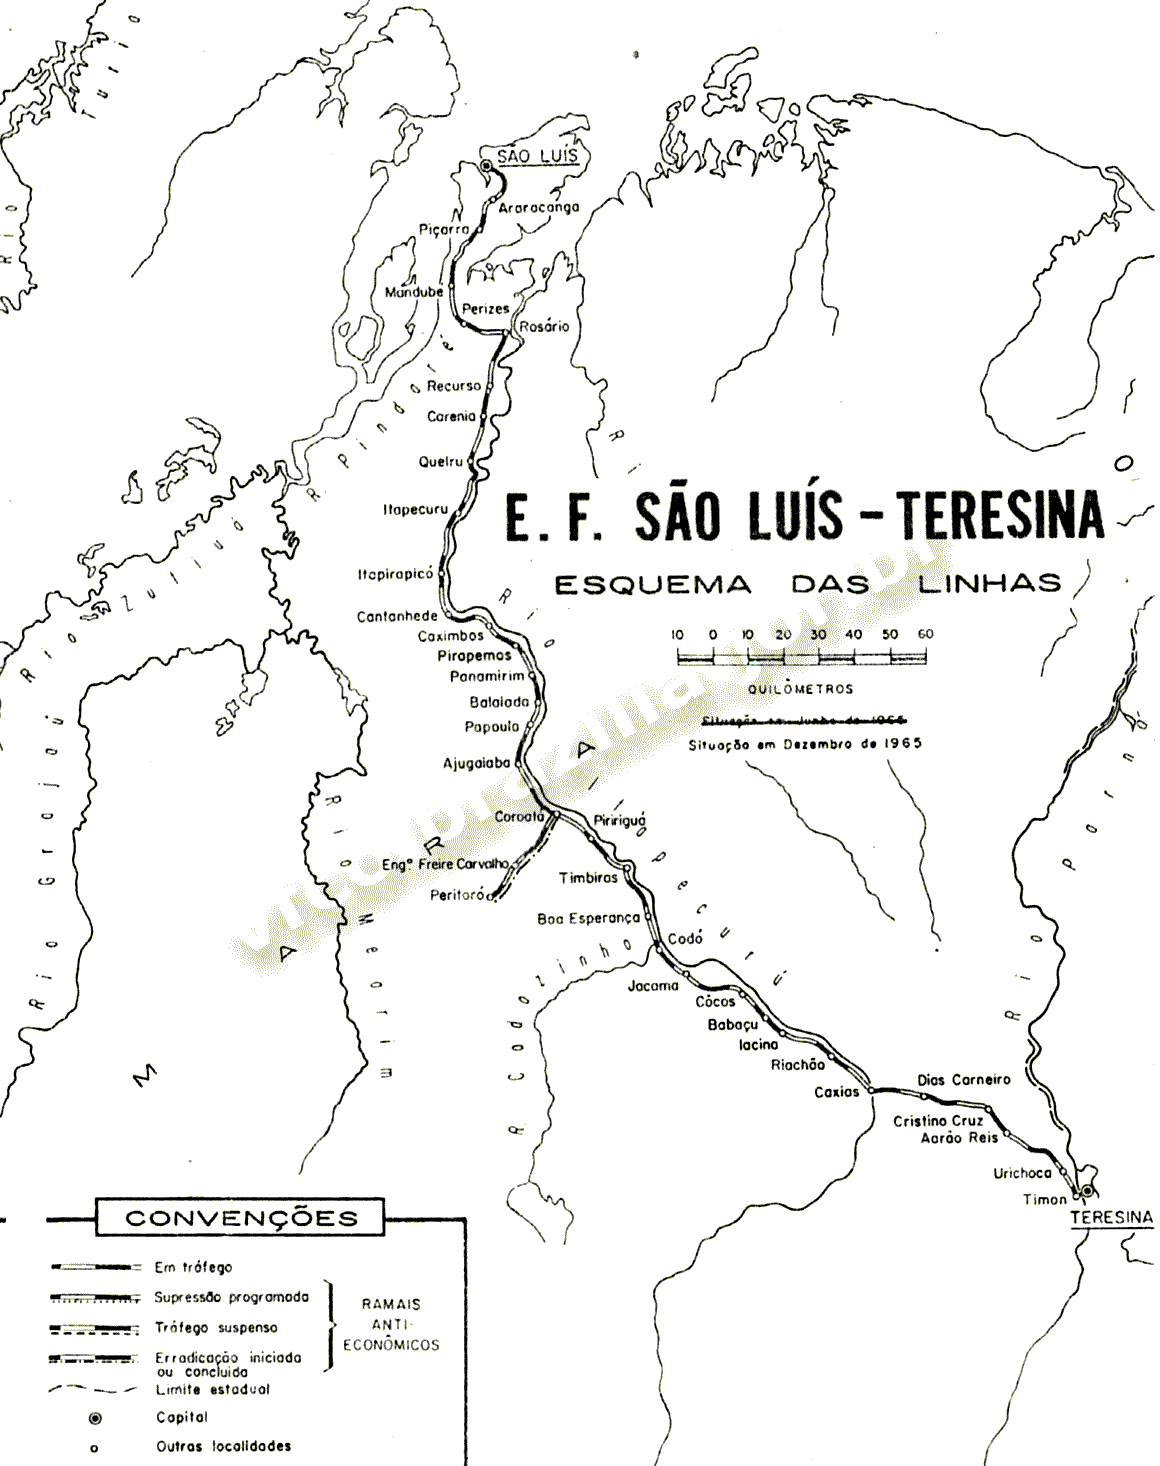 Mapa dos trilhos da Estrada de Ferro São Luís - Teresina, da Rede Ferroviária Federal - RFFSA, em 1965